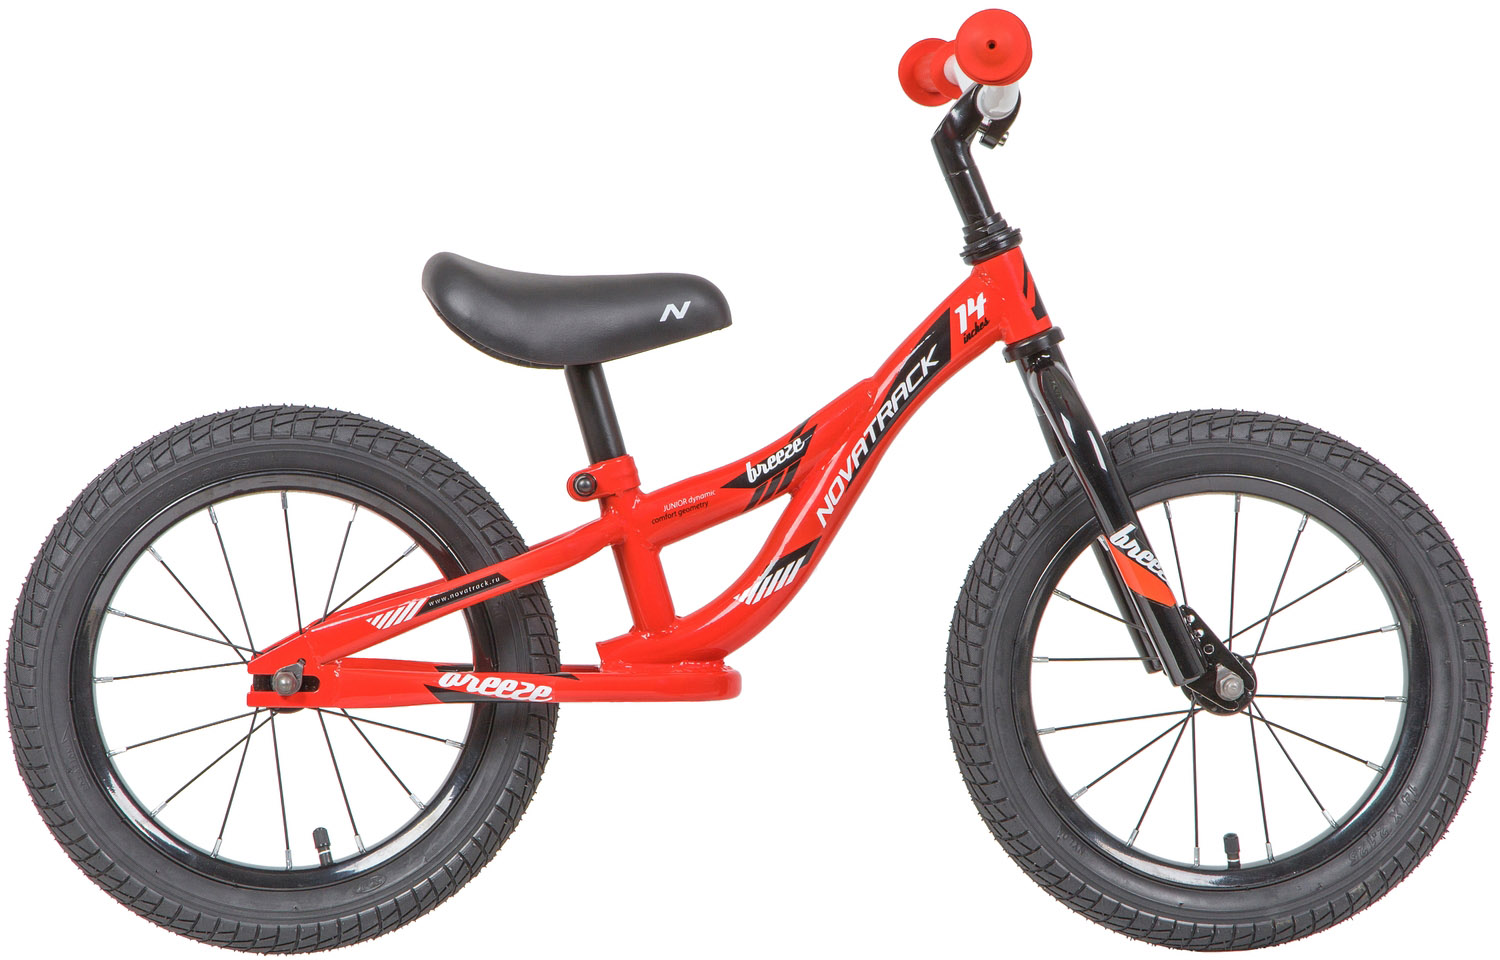  Отзывы о Детском велосипеде Novatrack Breeze 14 2020